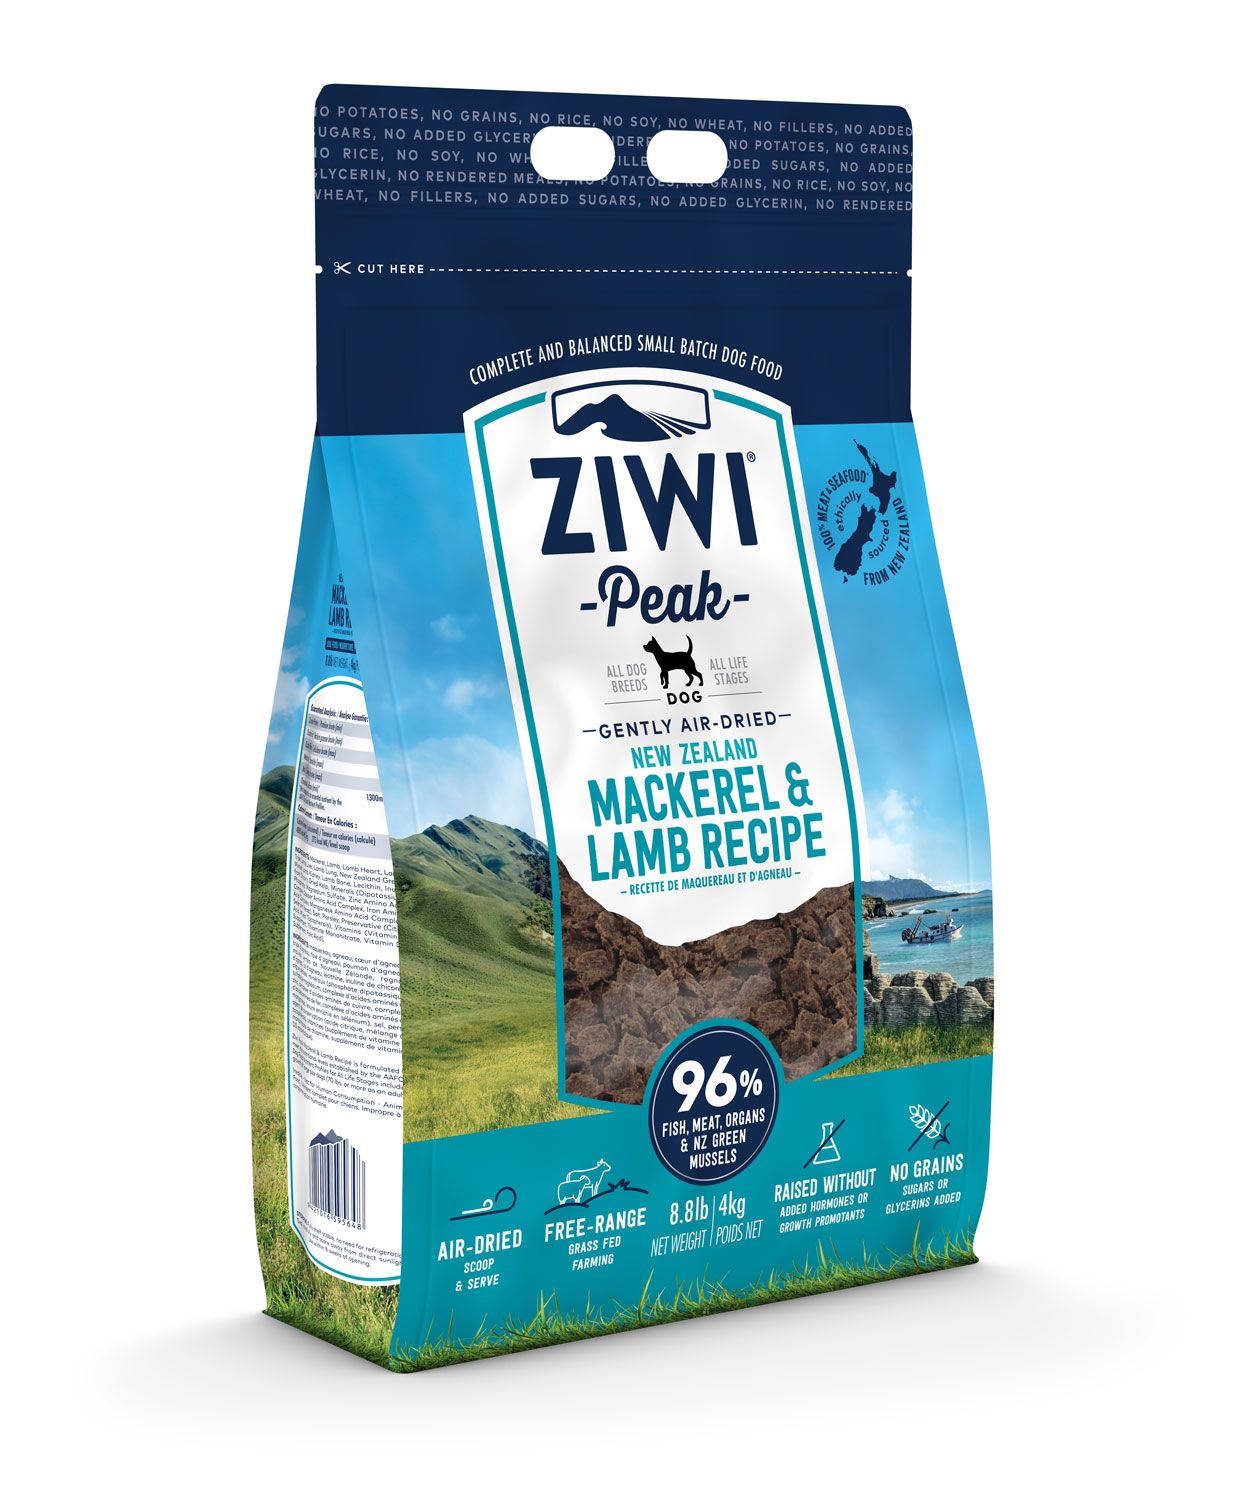 Ziwi Peak Air-Dried Mackerel & Lamb Recipe